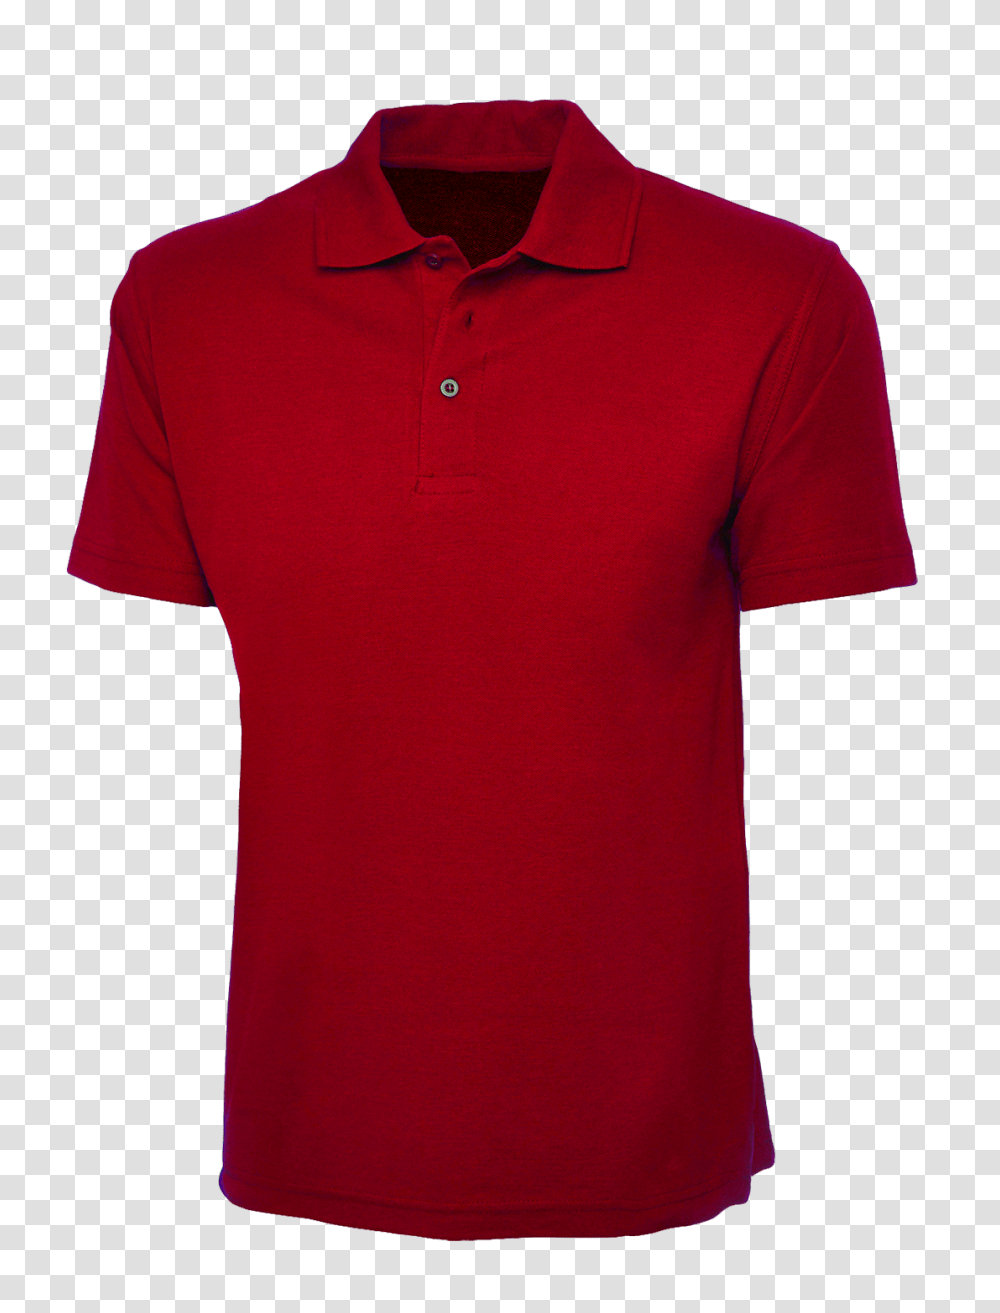 Plain Red Polo Shirt Cutton Garments, Apparel, Sleeve, Maroon ...